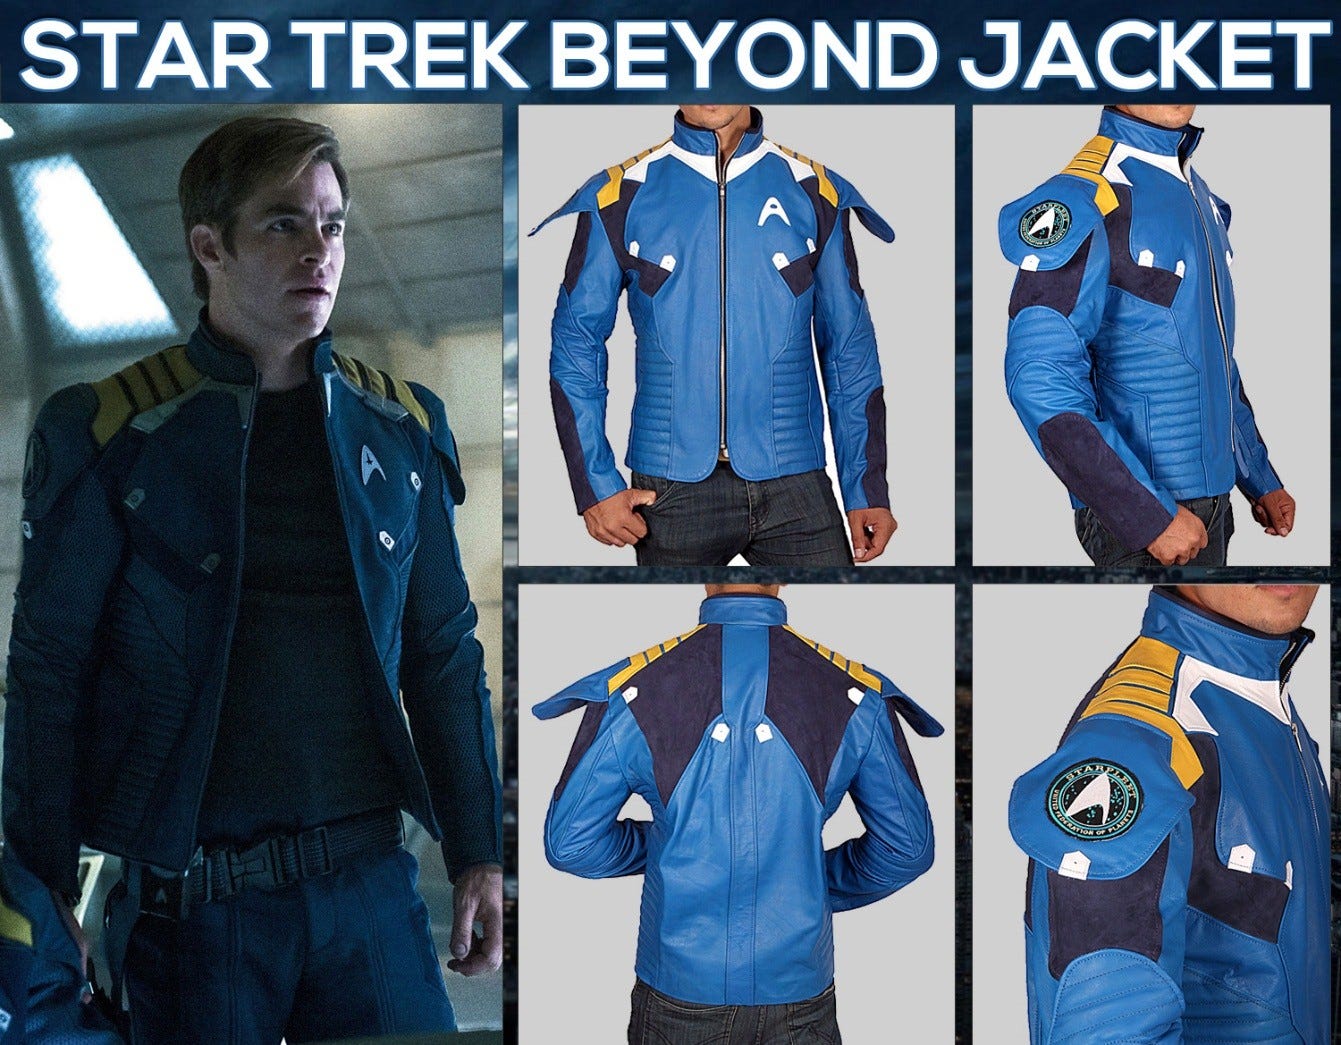 Star Trek Beyond Movie Leather Jacket Worn by Kirk | by Movies Jacket |  Medium